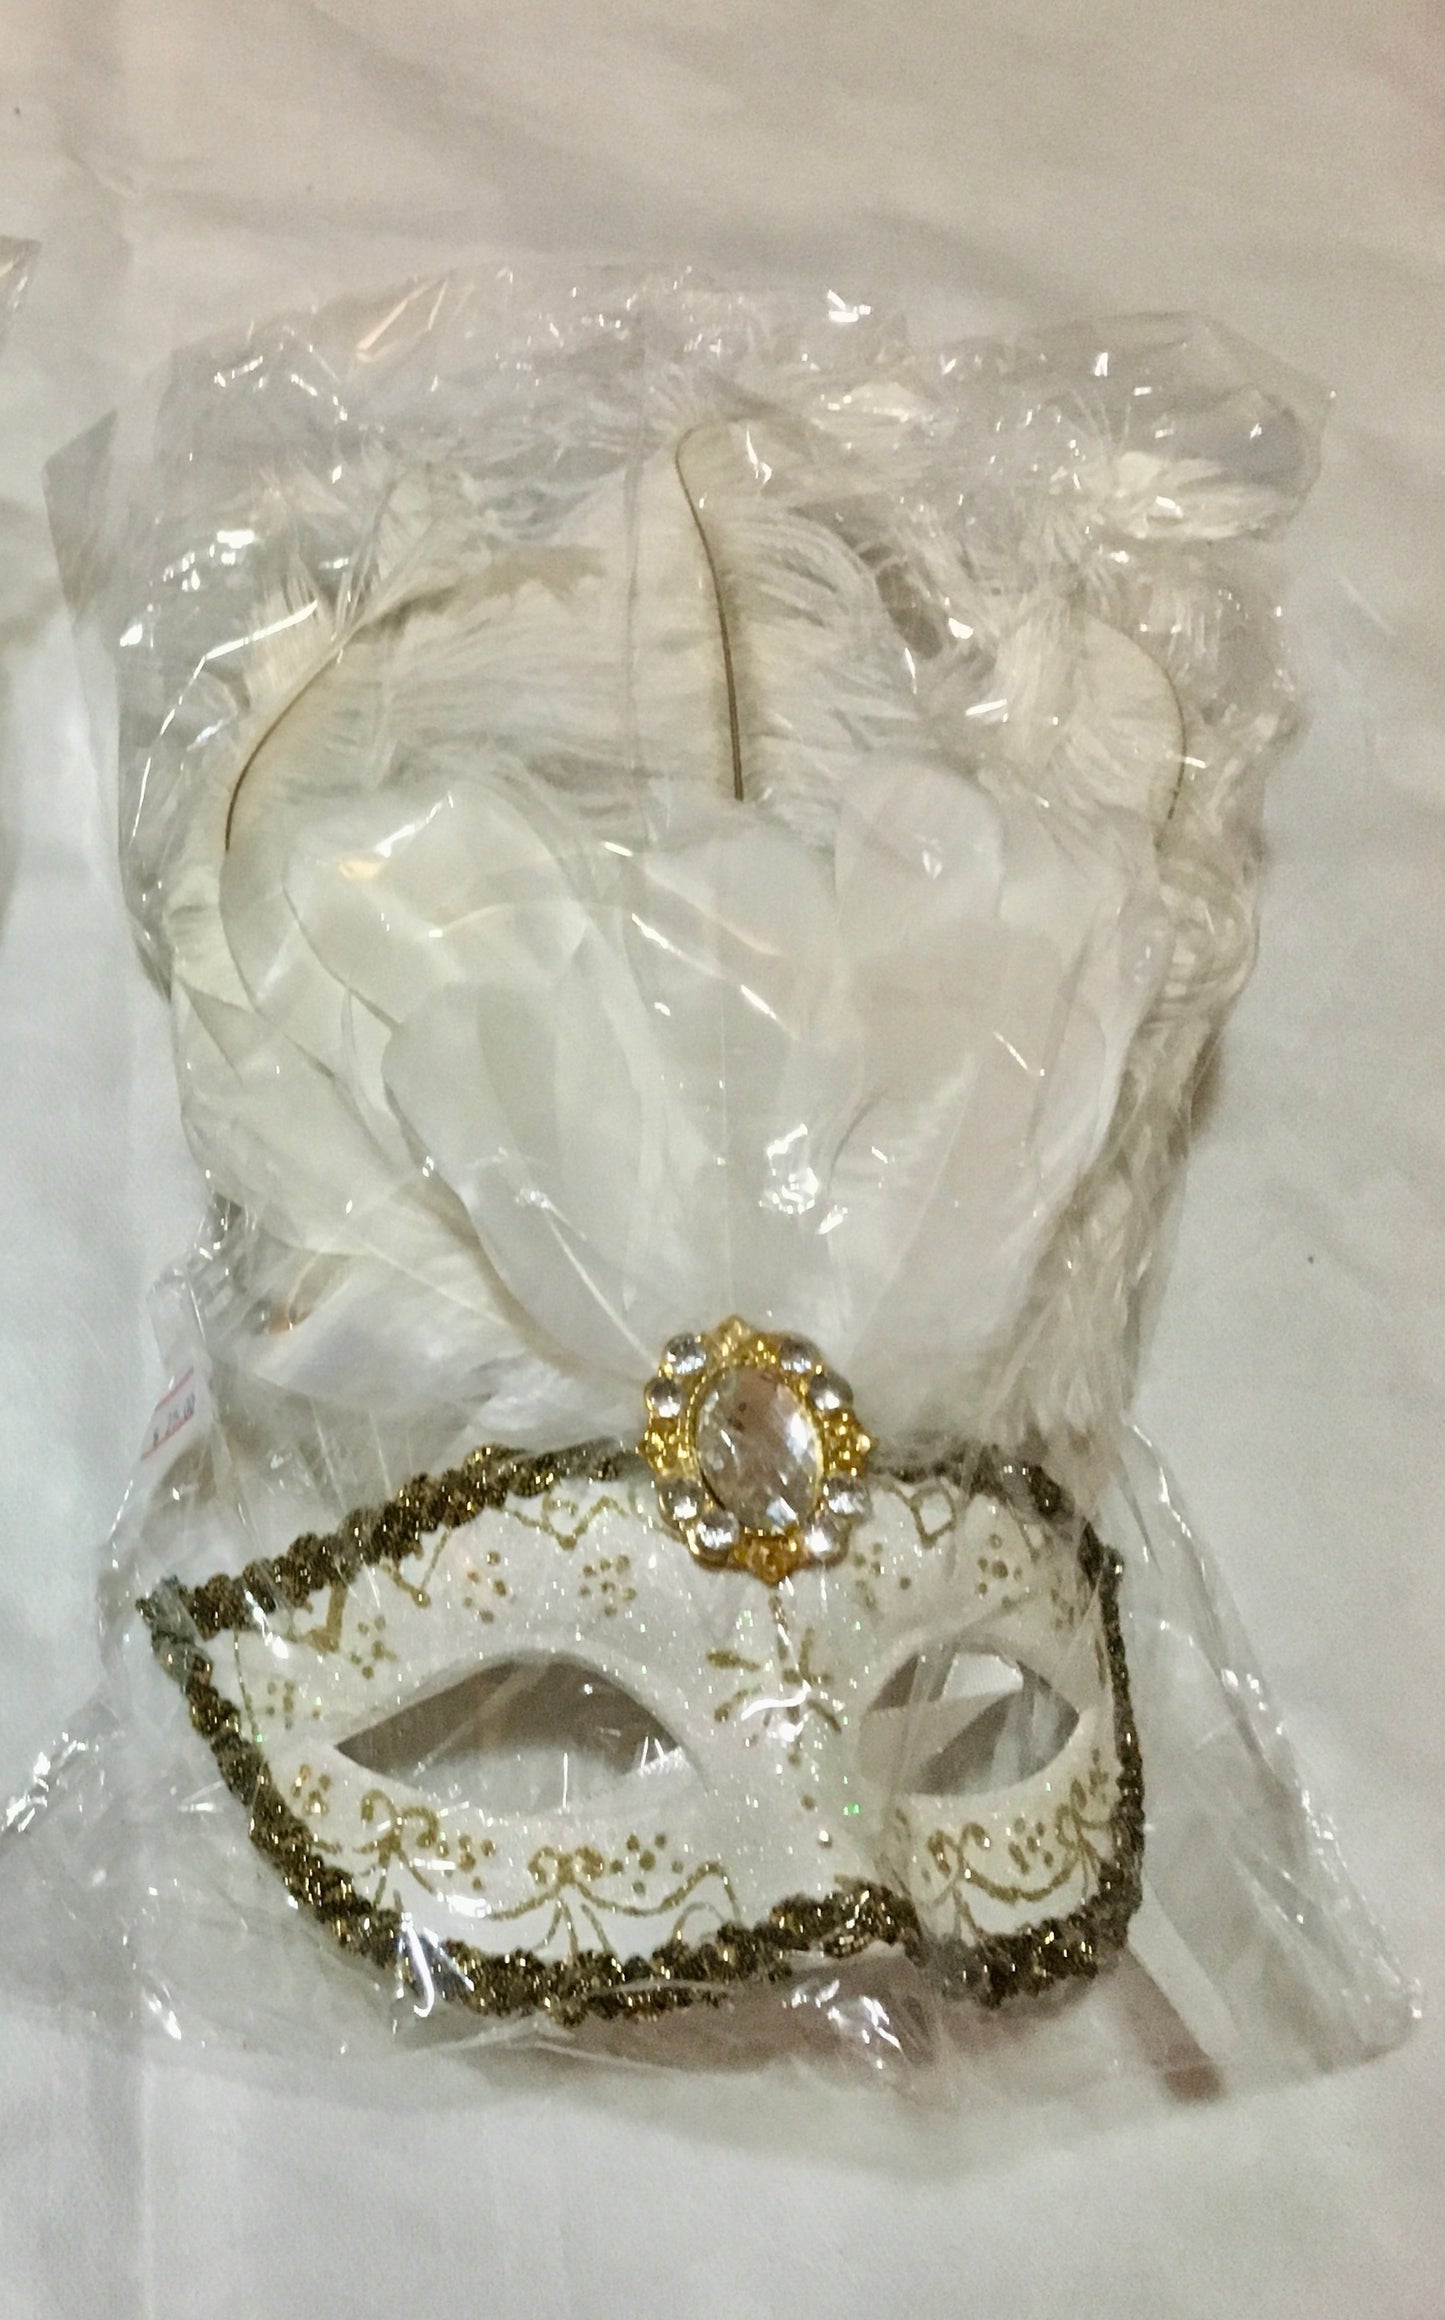 Masquerade/party mask